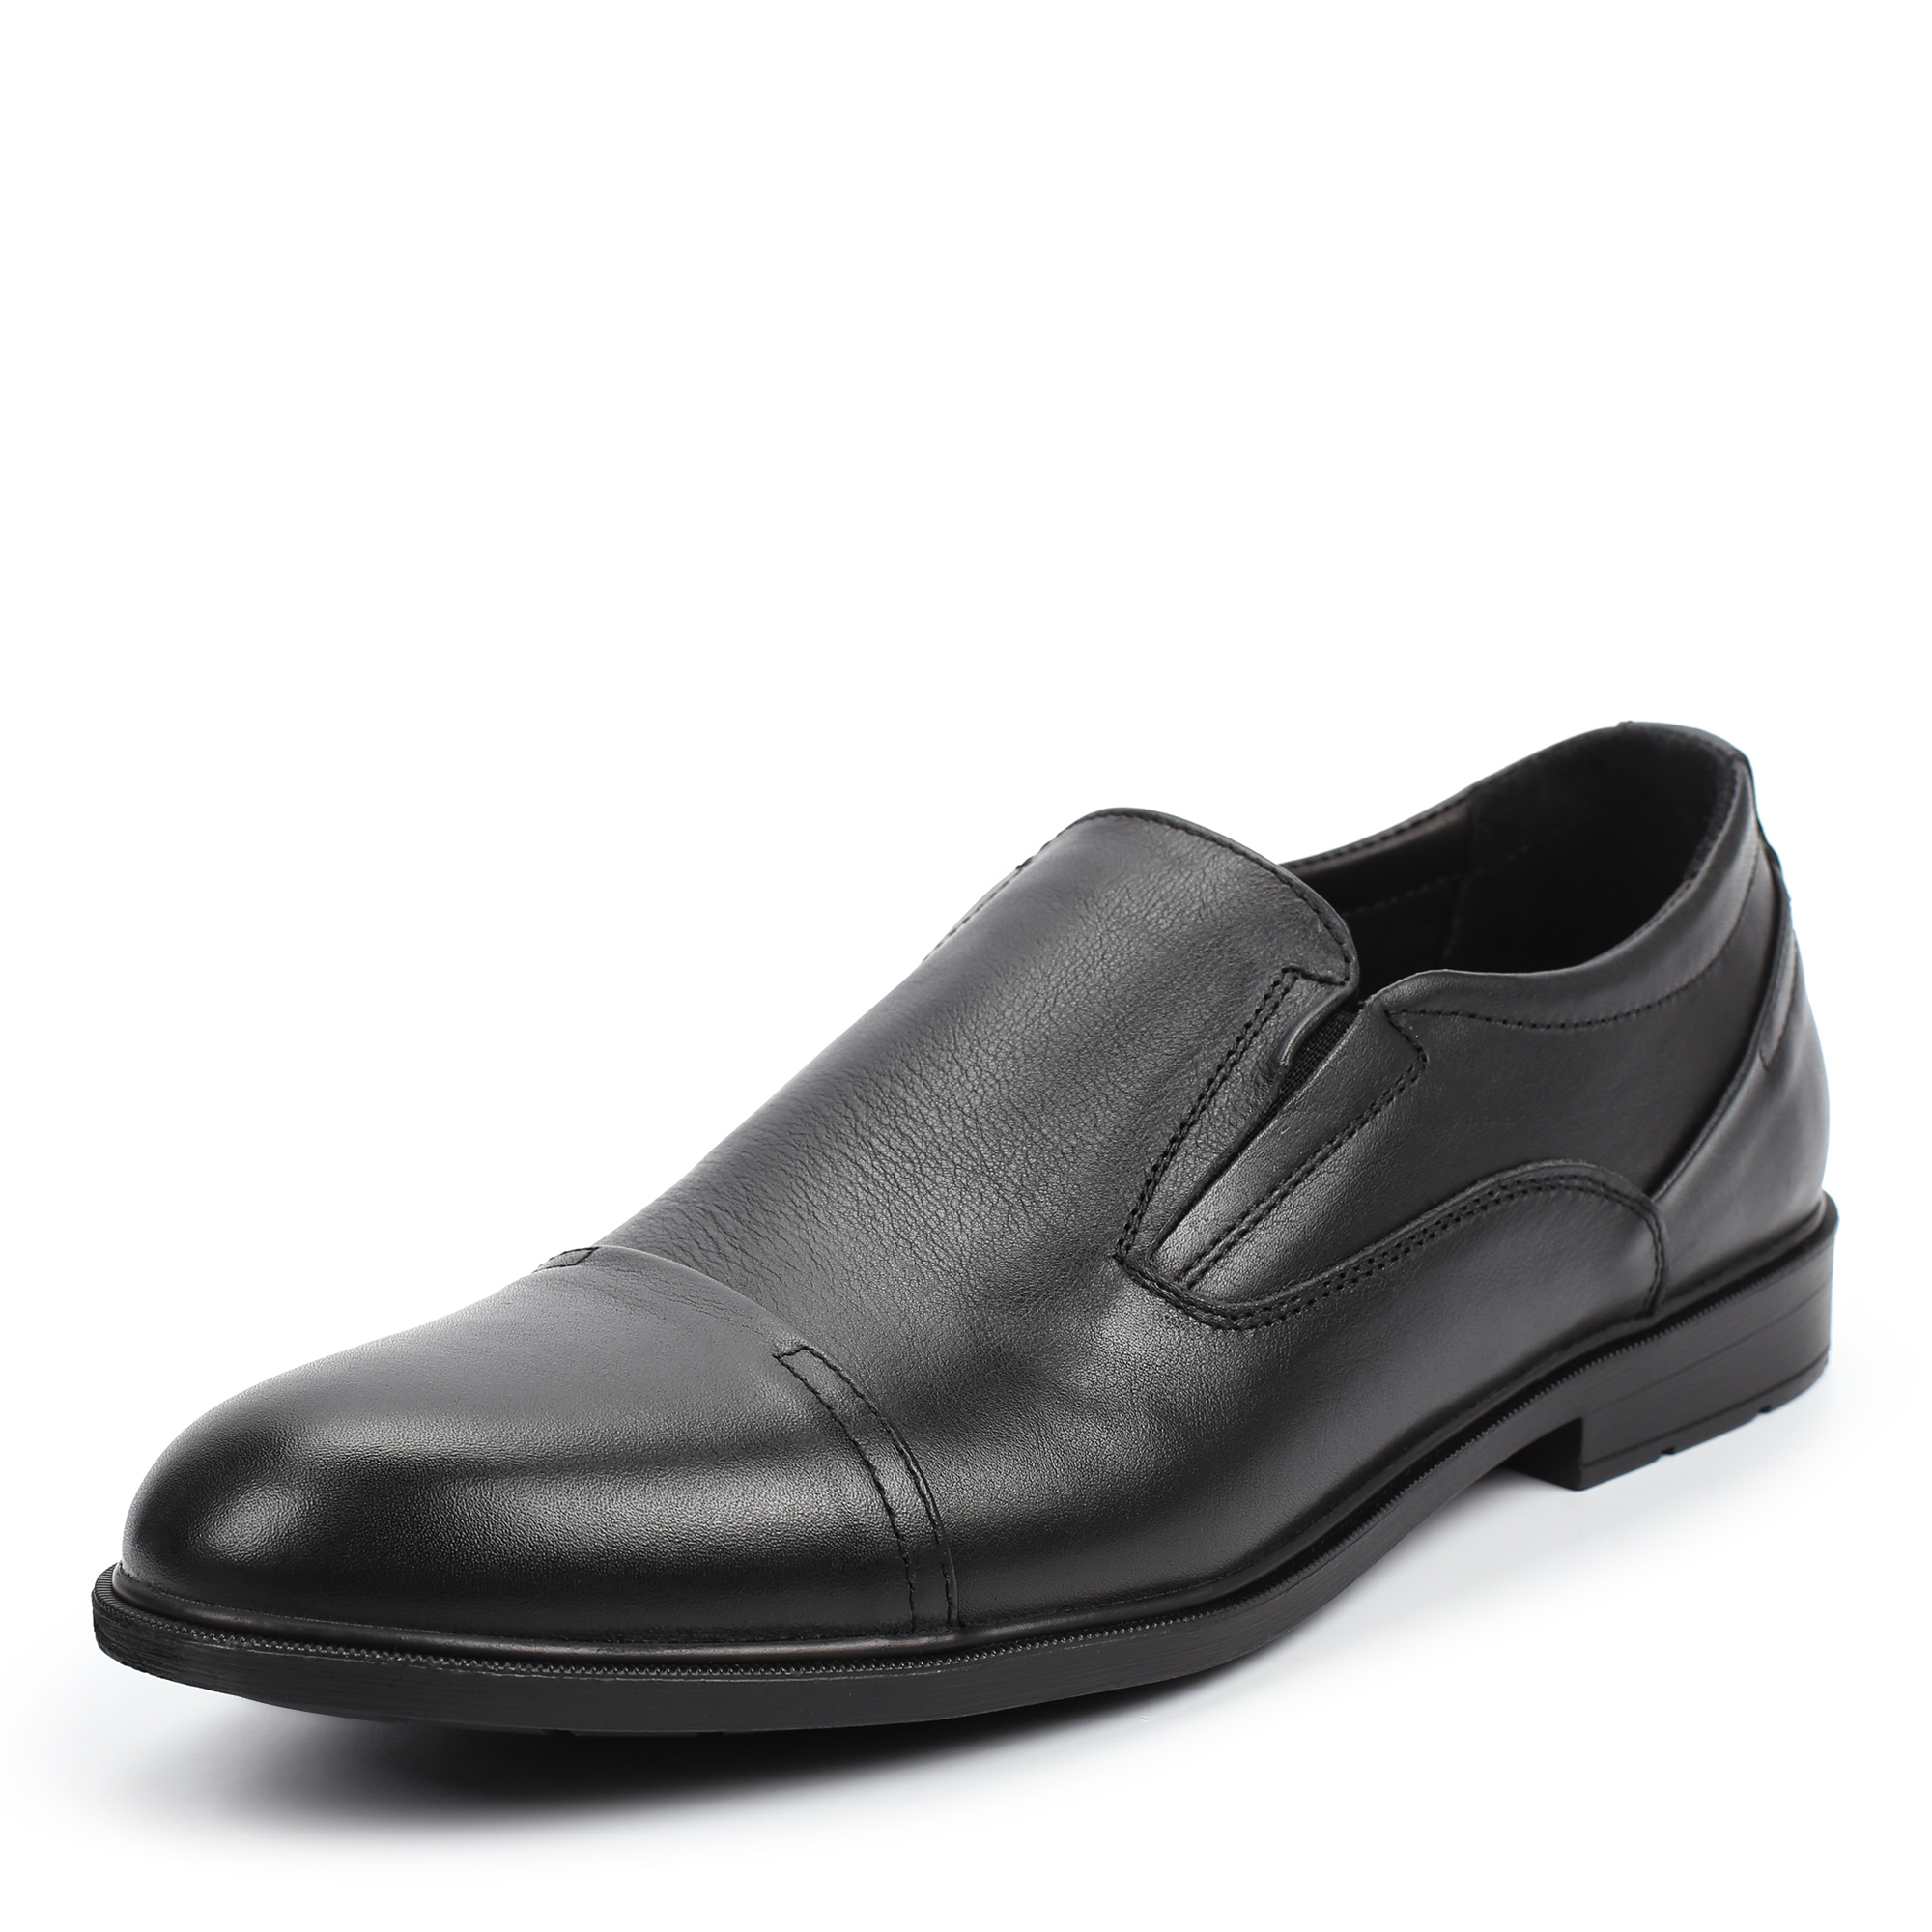 Туфли/полуботинки Thomas Munz 335-131A-1102, цвет черный, размер 39 - фото 2